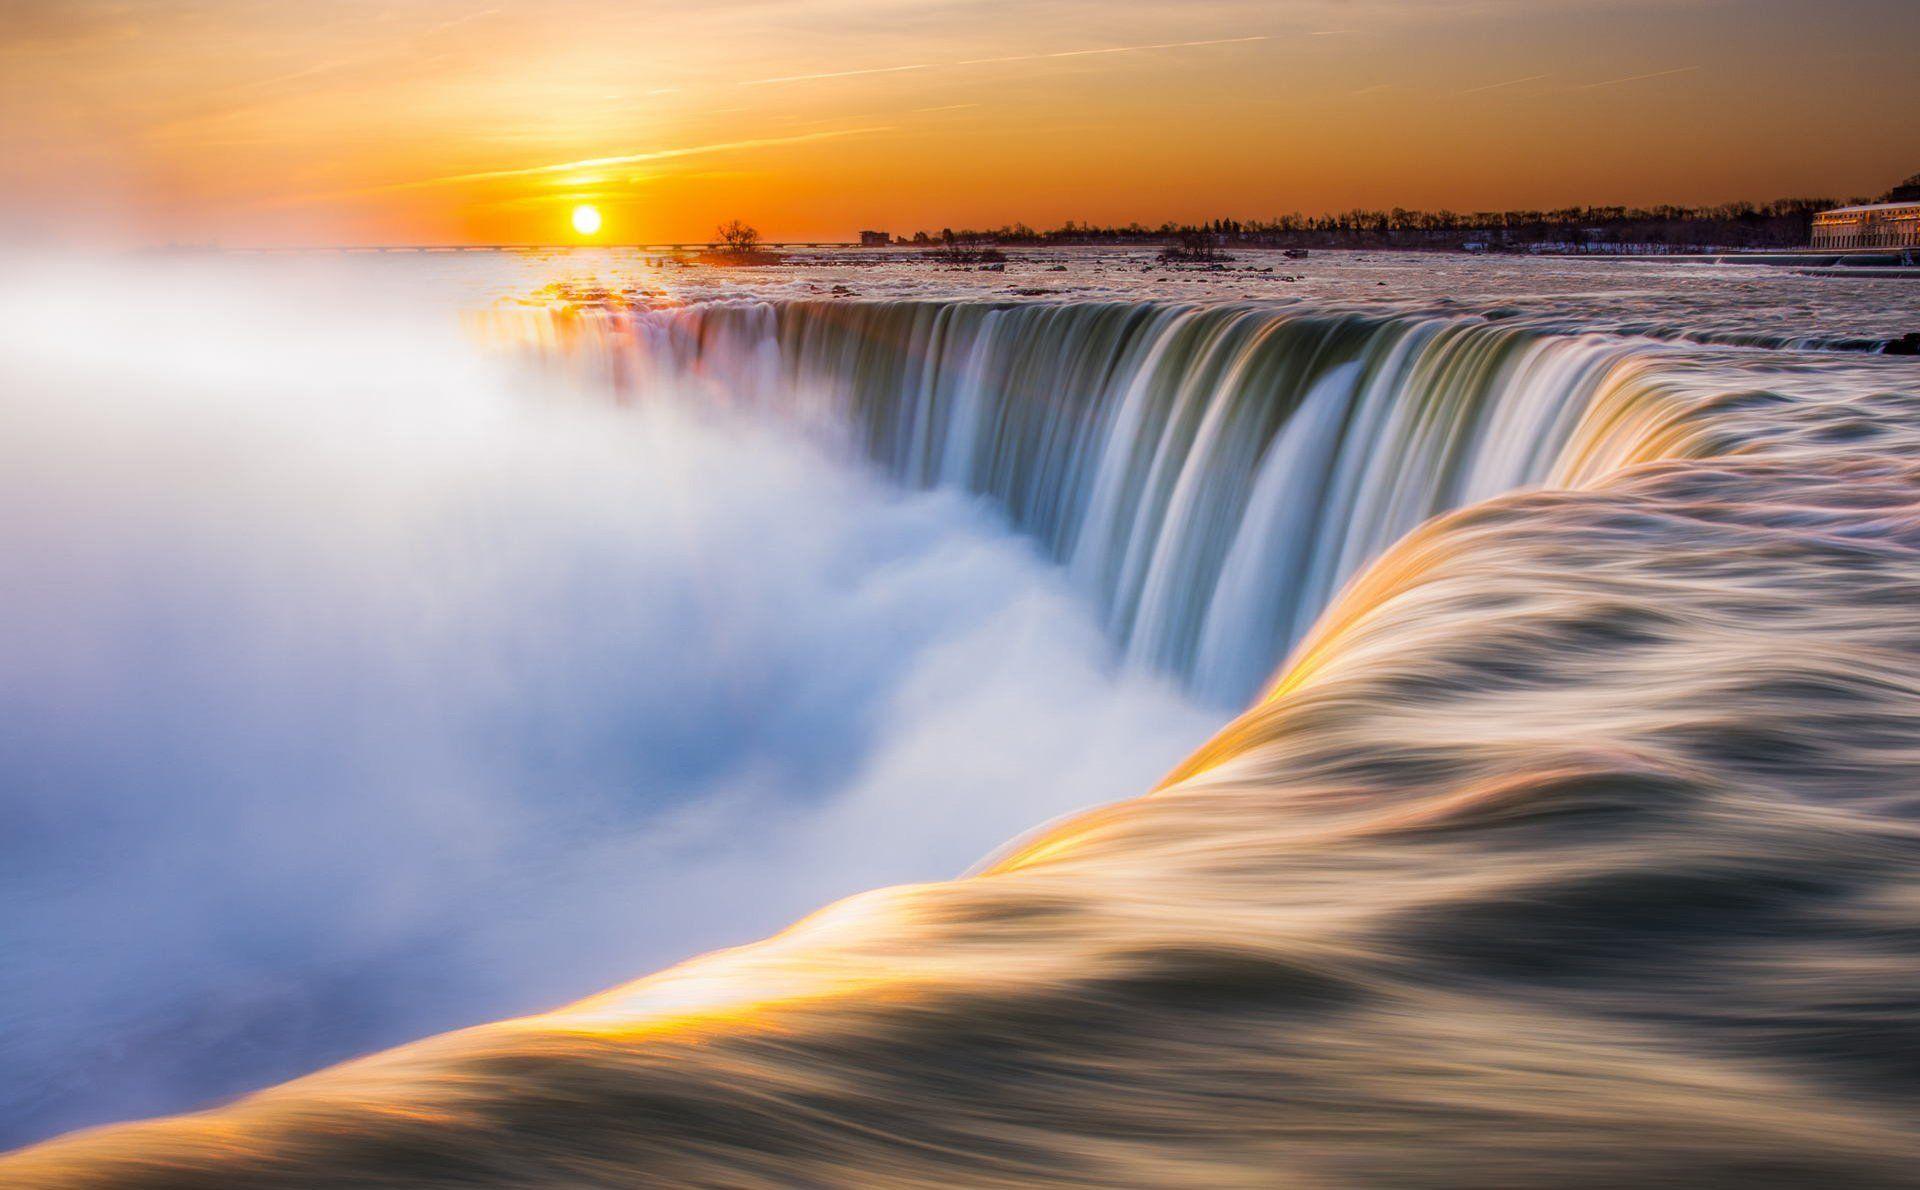 Niagara Falls 4k Ultra HD Wallpaper by Thomas Schou Eistrup